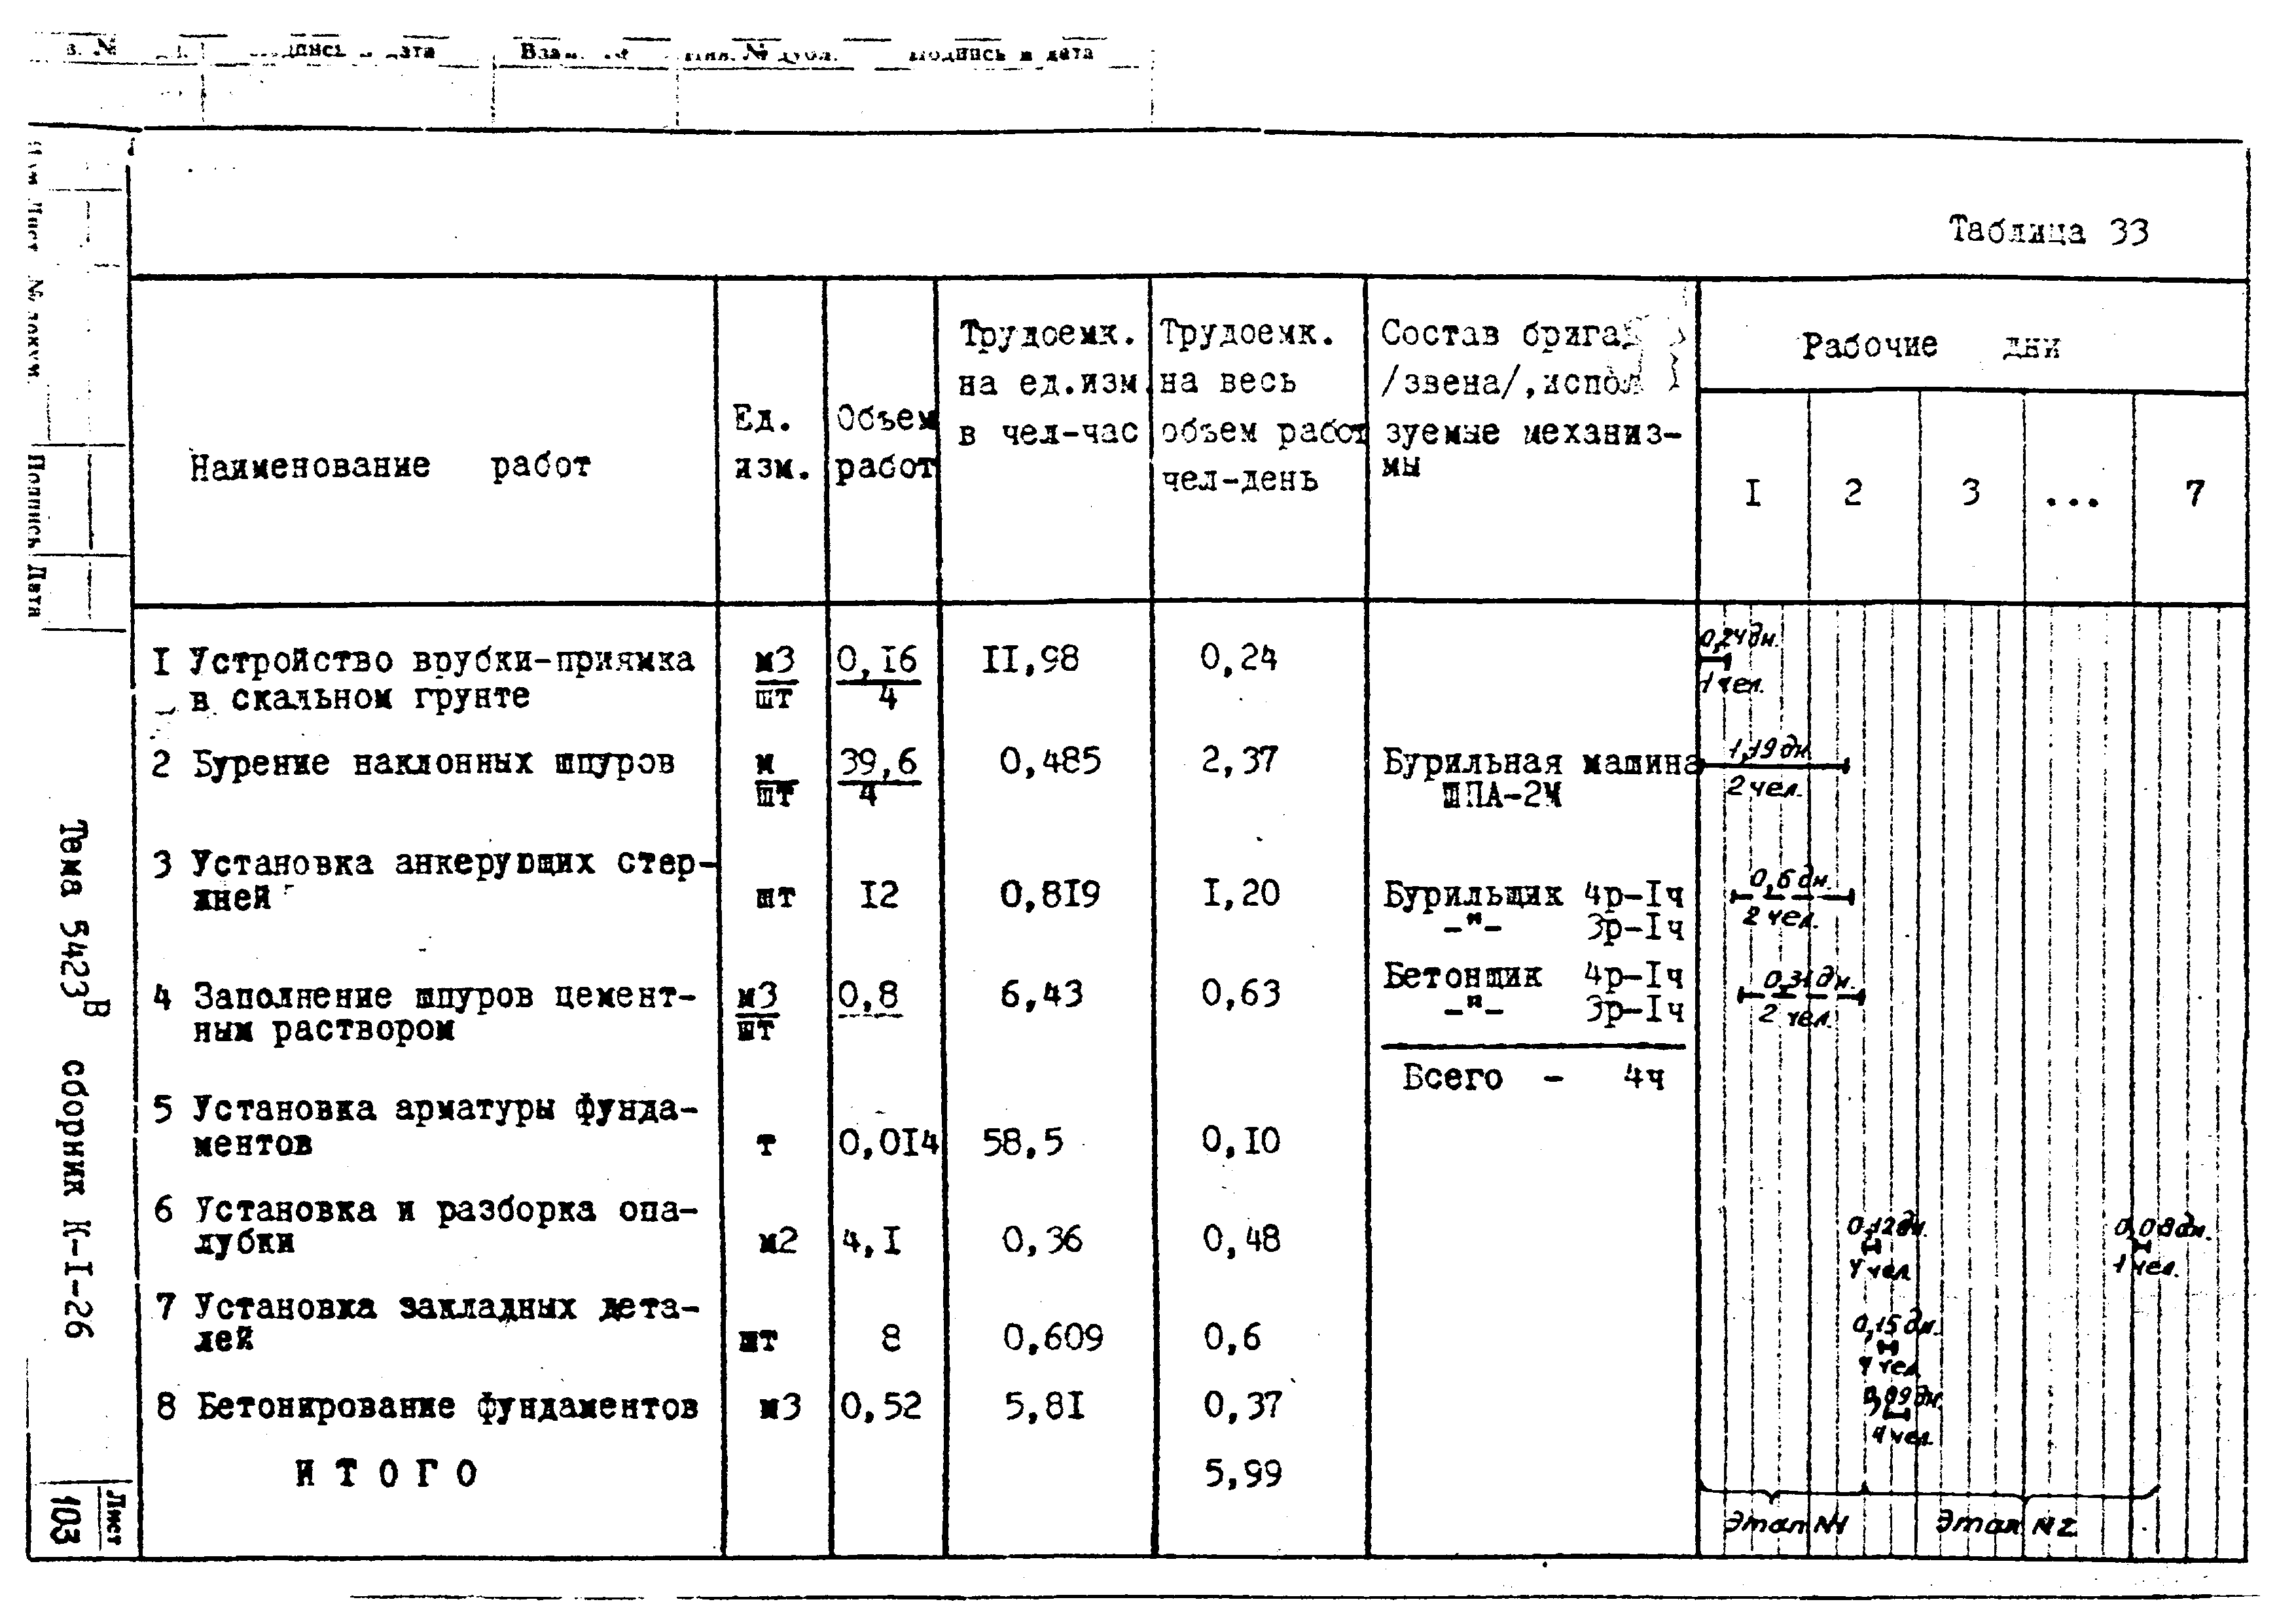 Технологическая карта К-1-26-6